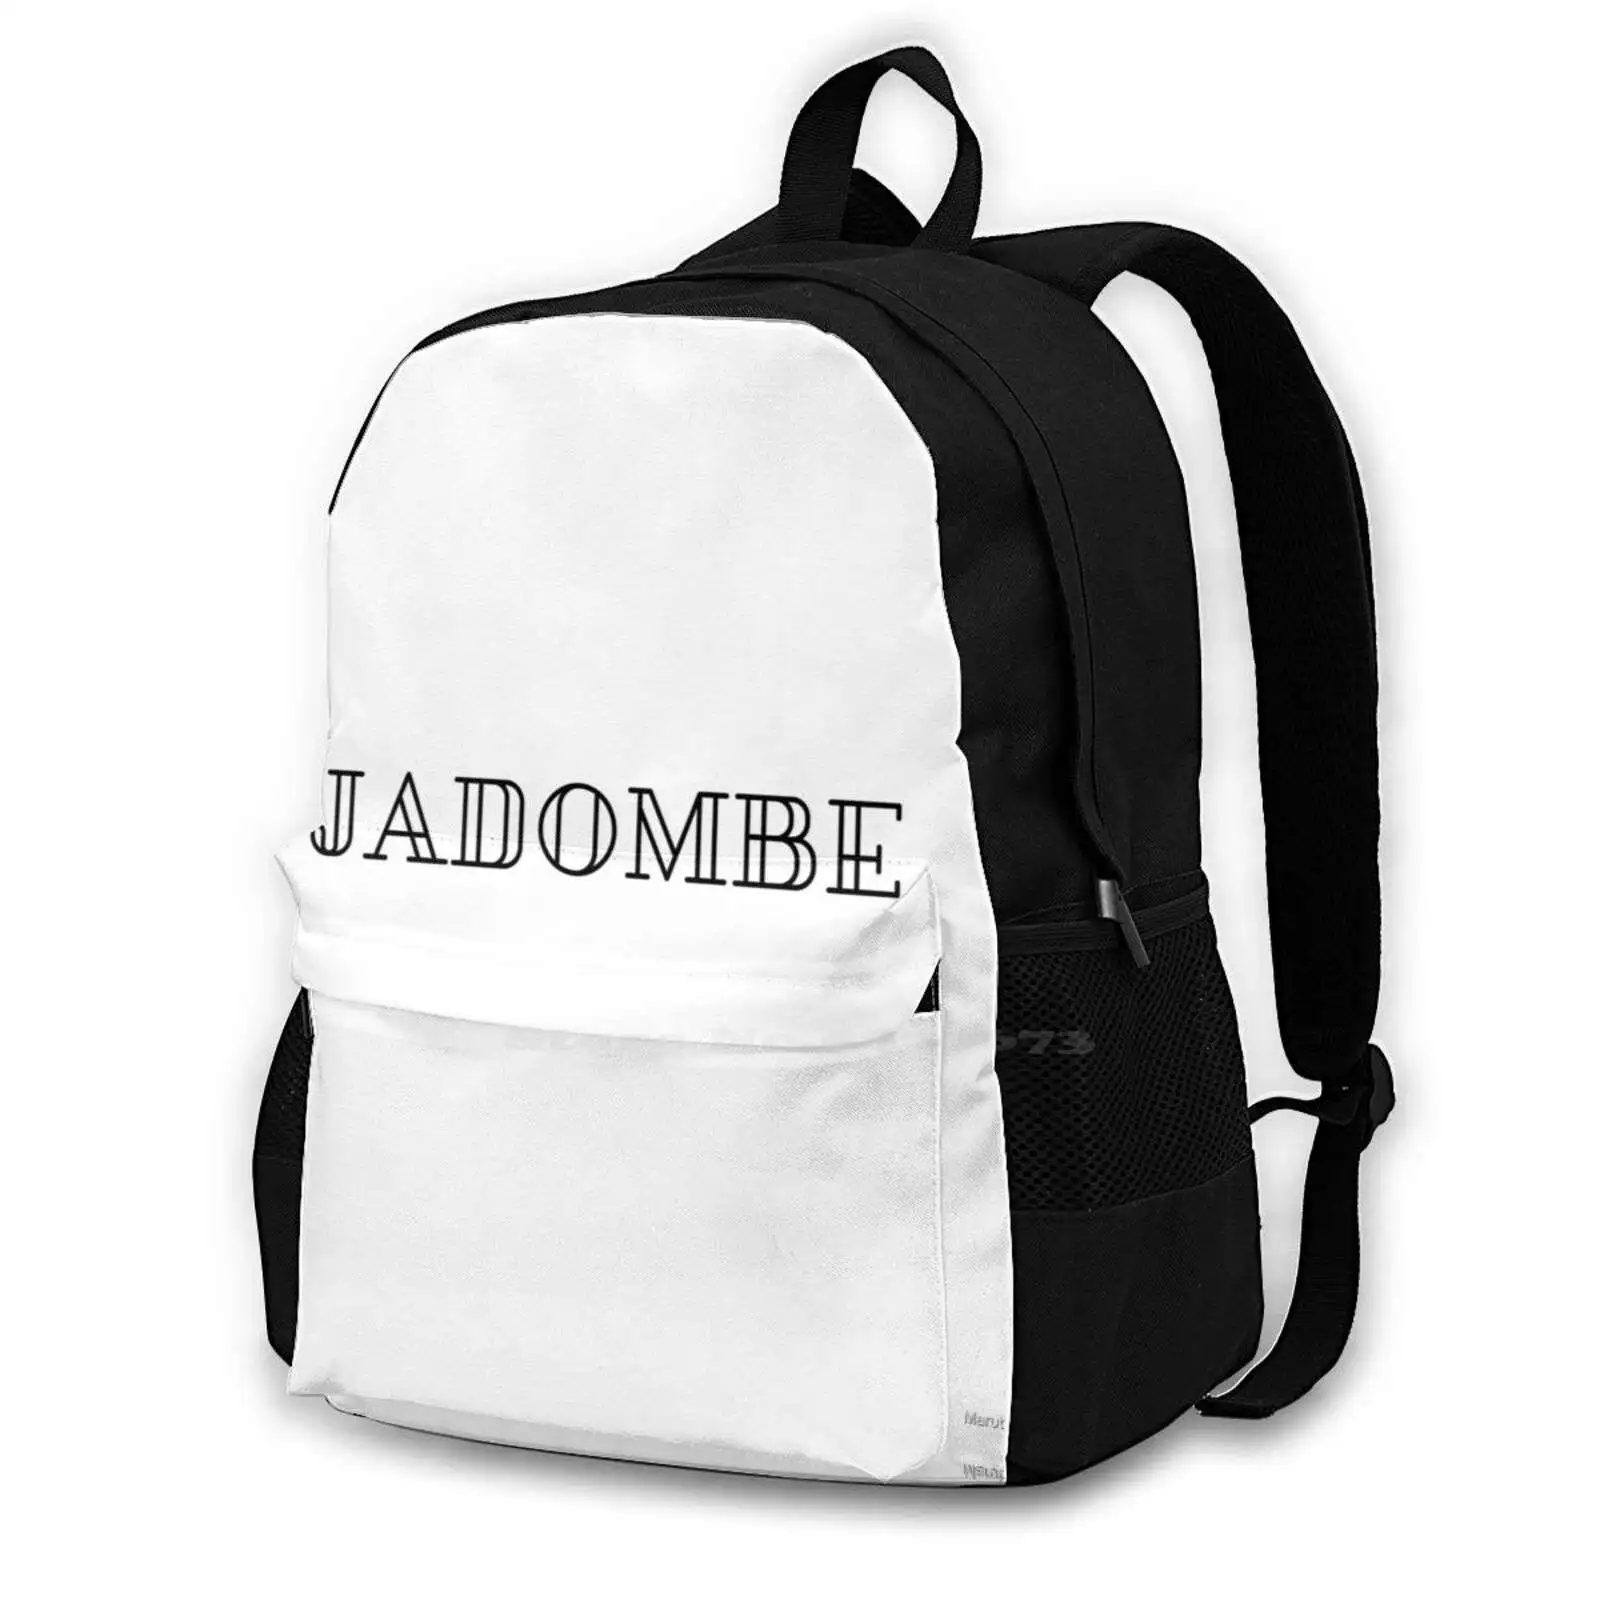 

Студенческий рюкзак Jadombe для подростков, студентов колледжа, сумки для ноутбука, сумки для путешествий, жёсткий металлический рюкзак Jadombe Band Music с изображением вокала, фольклорного журавль Джексона